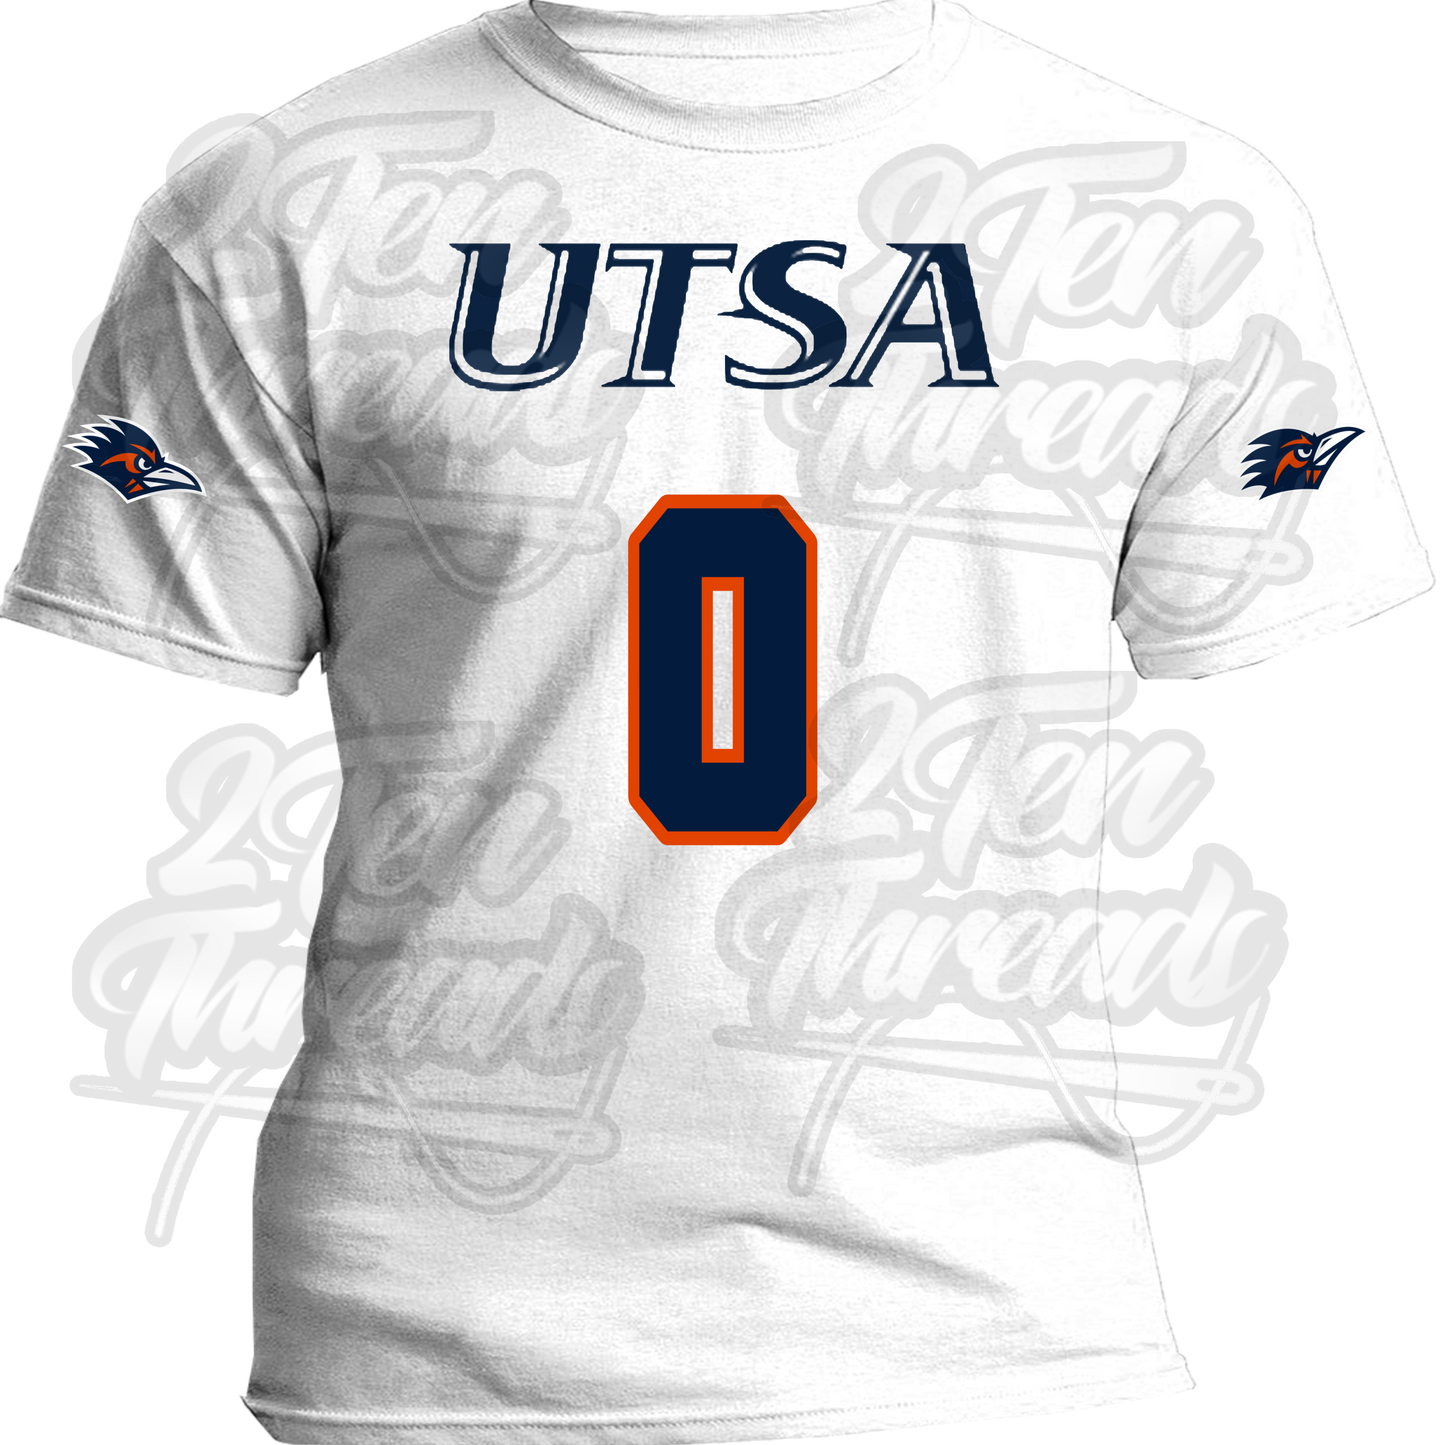 UTSA Customizable Jersey Shirts!